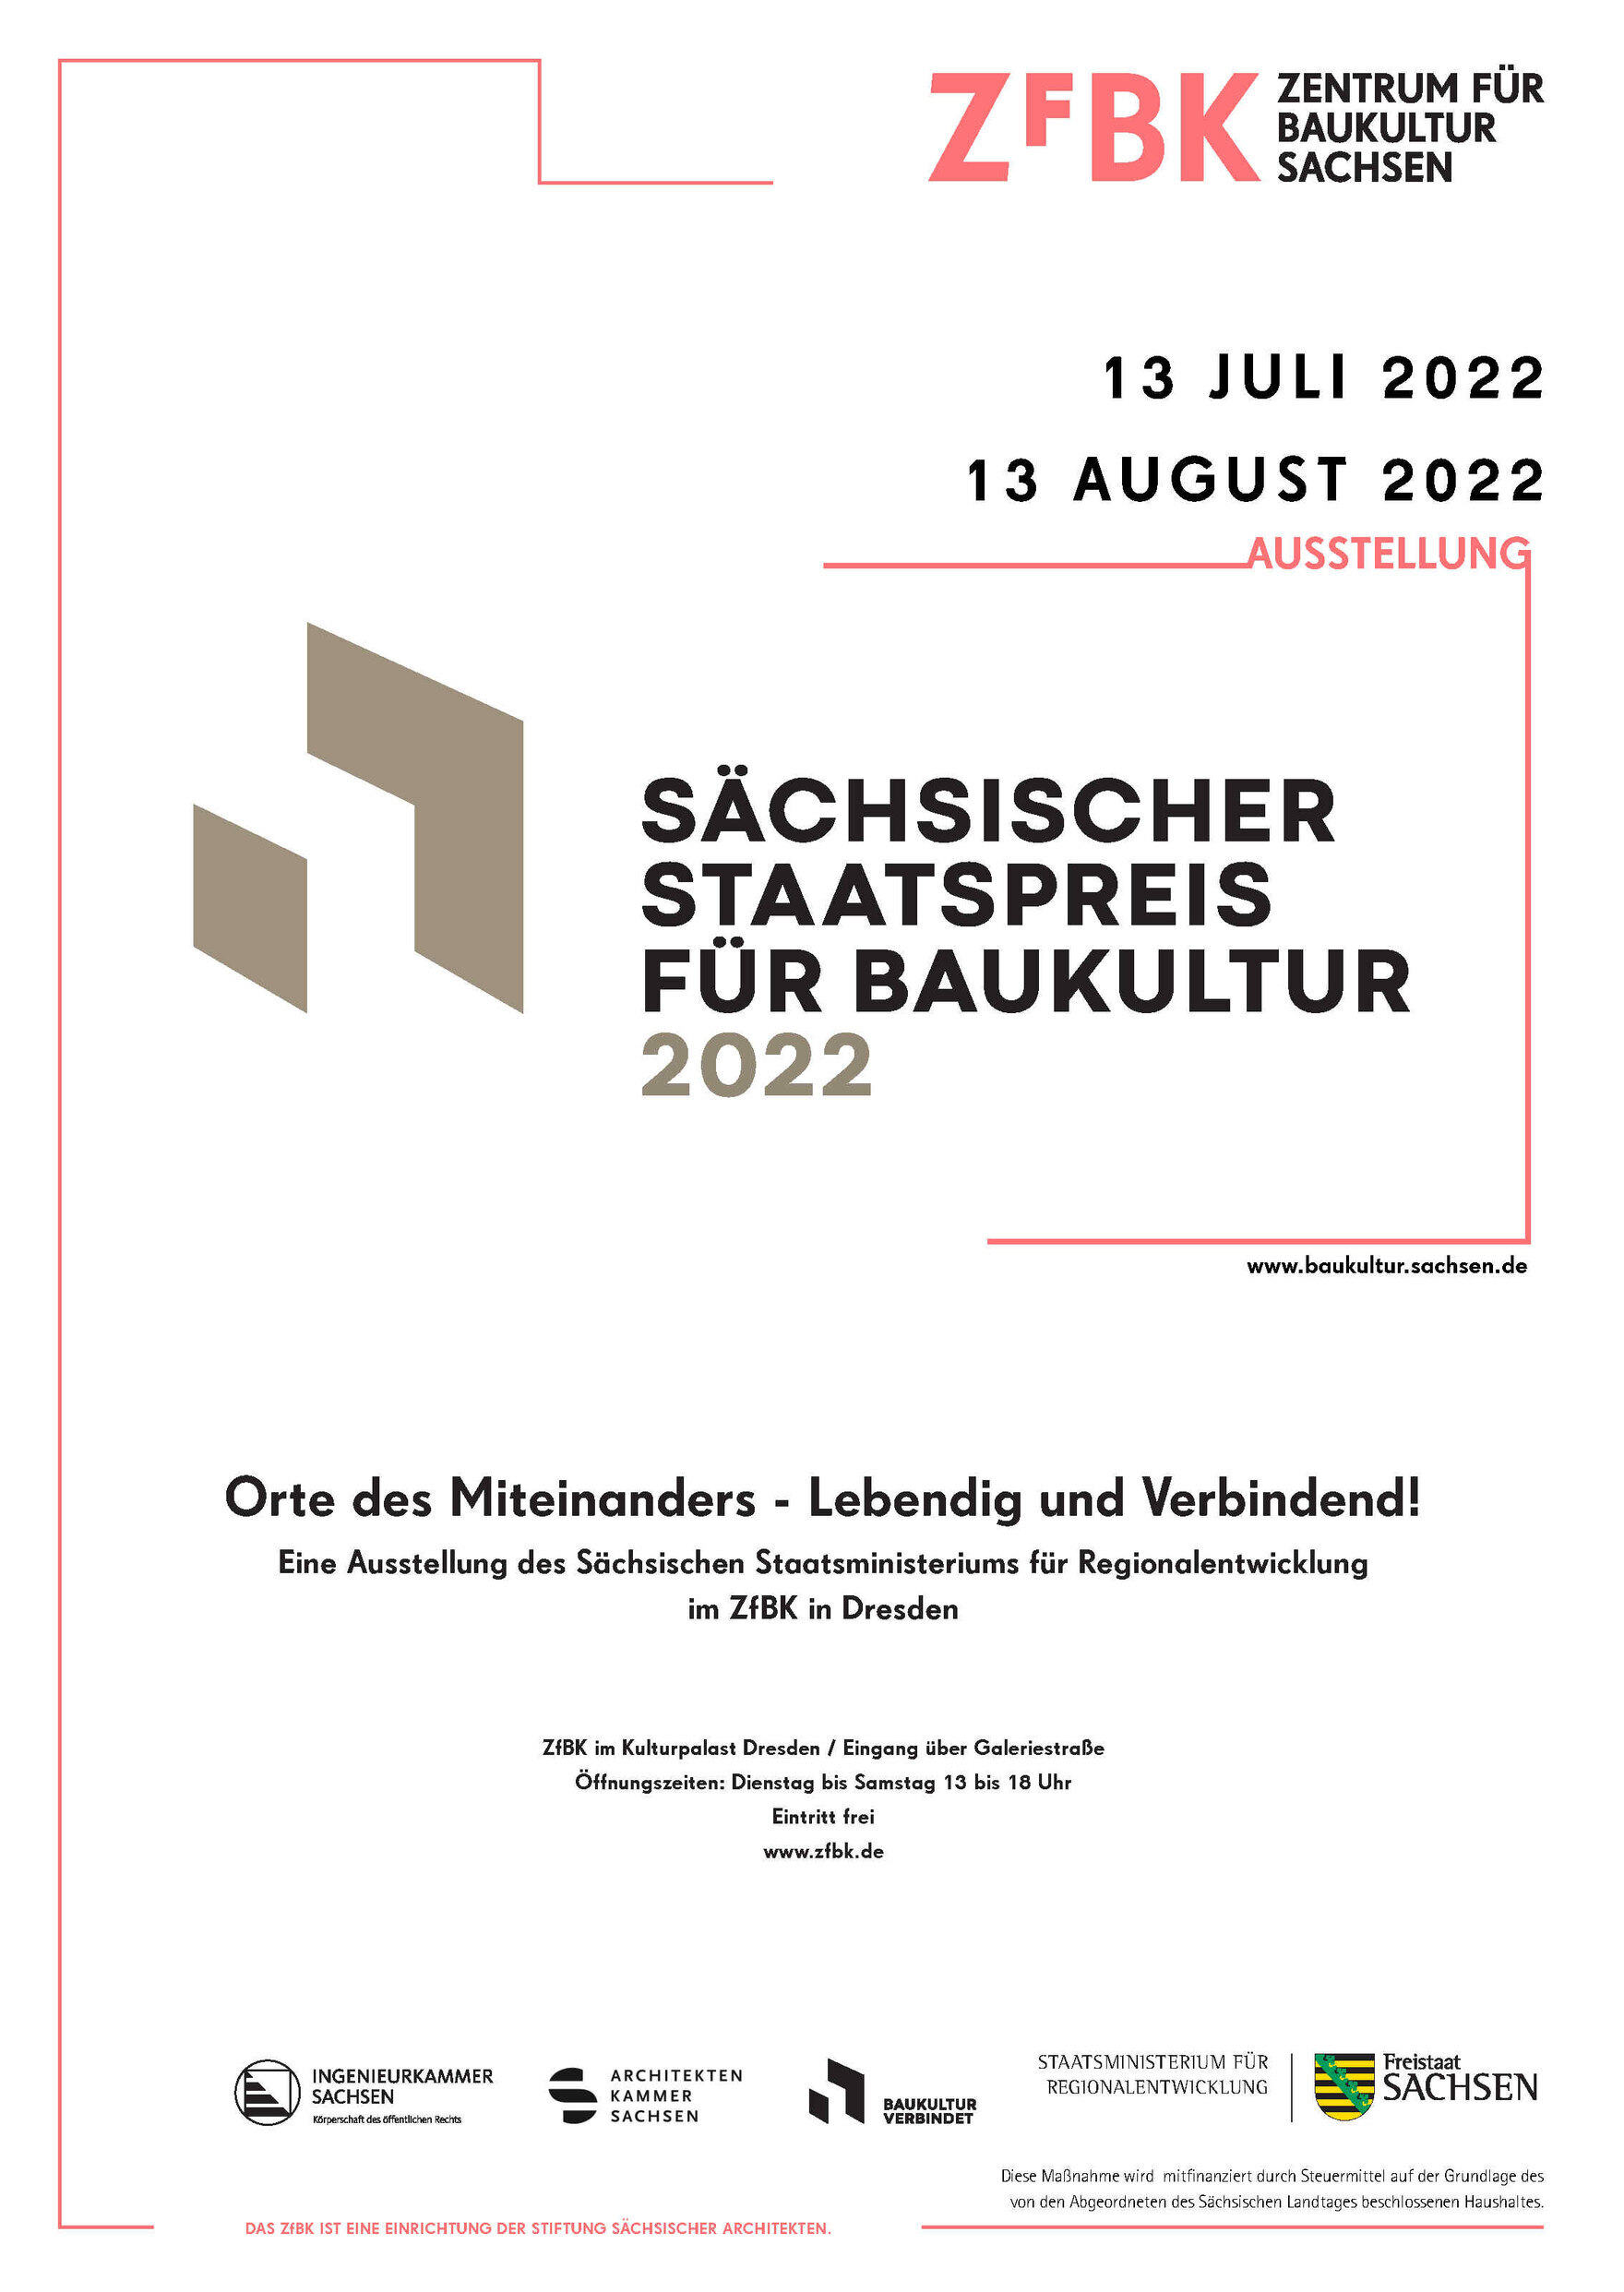 Ausstellungsplakat zur Ausstellung des Staatspreises für Baukultur 2022 im ZfBK im Kulturpalast Dresden vom 13. Juli bis 13. August